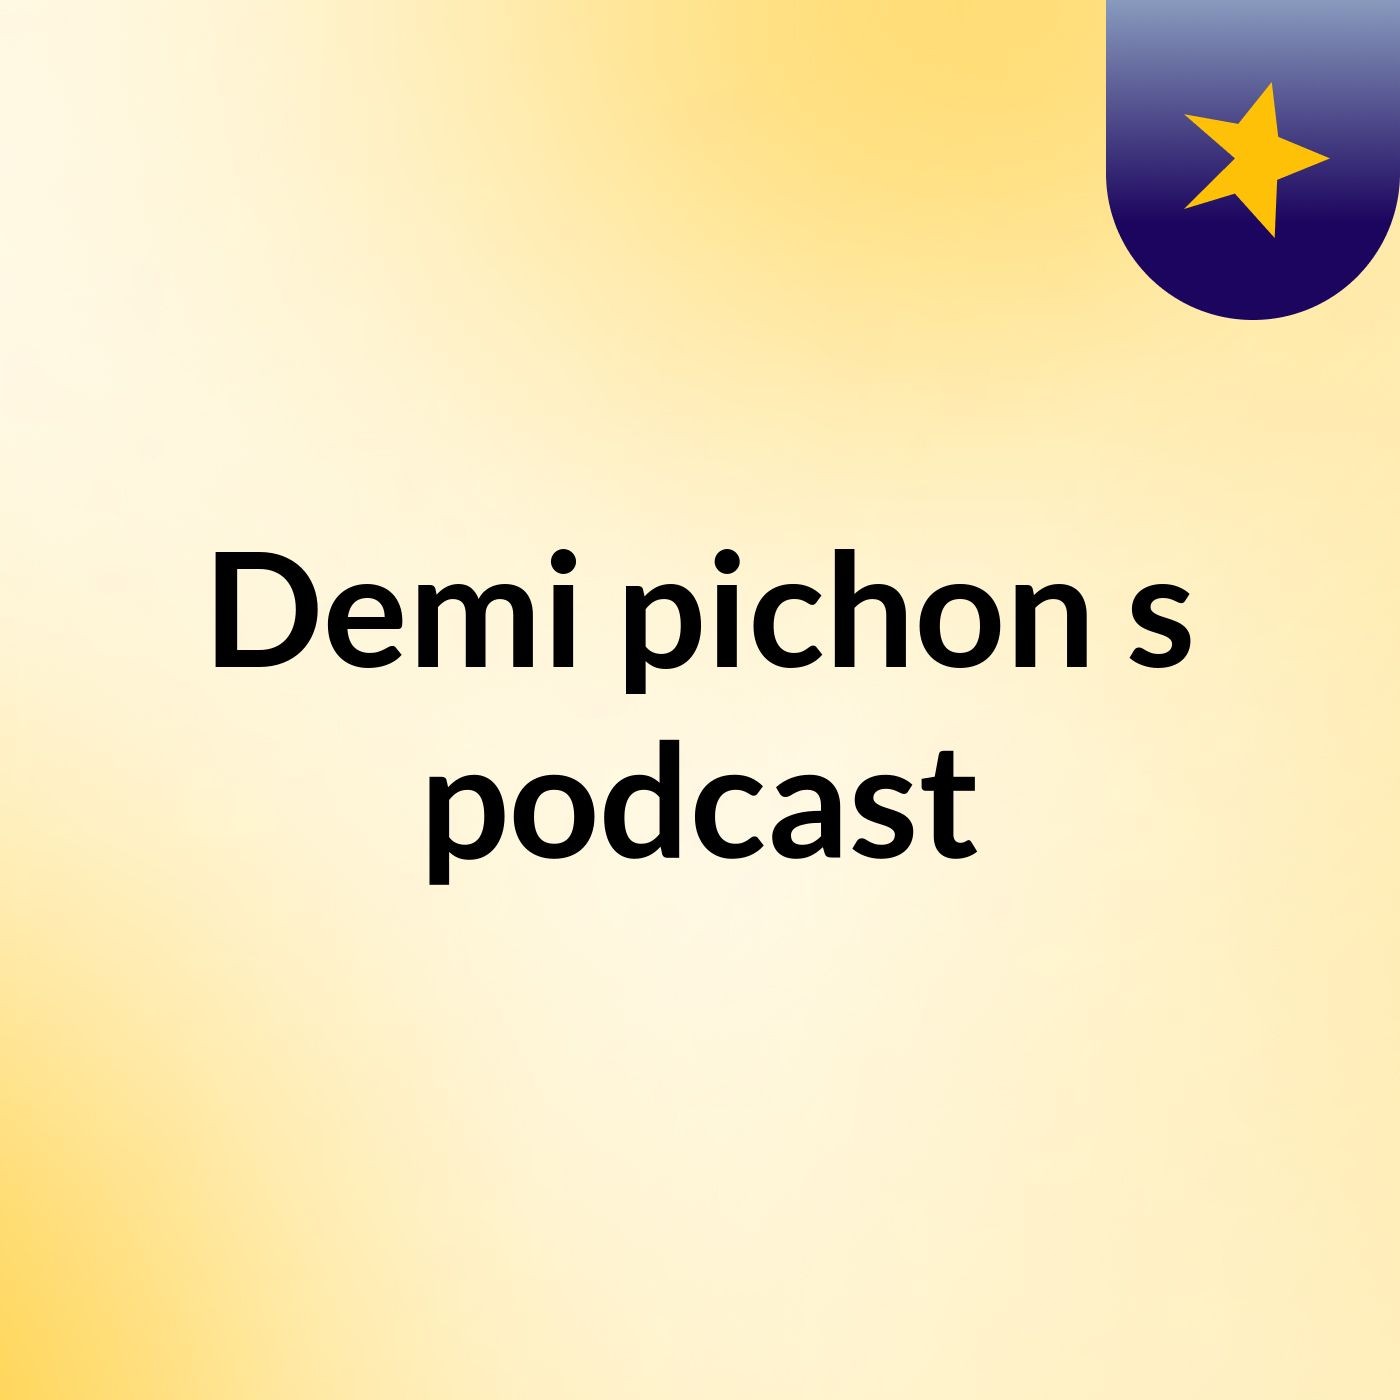 Episode 3 - Demi pichon's podcast